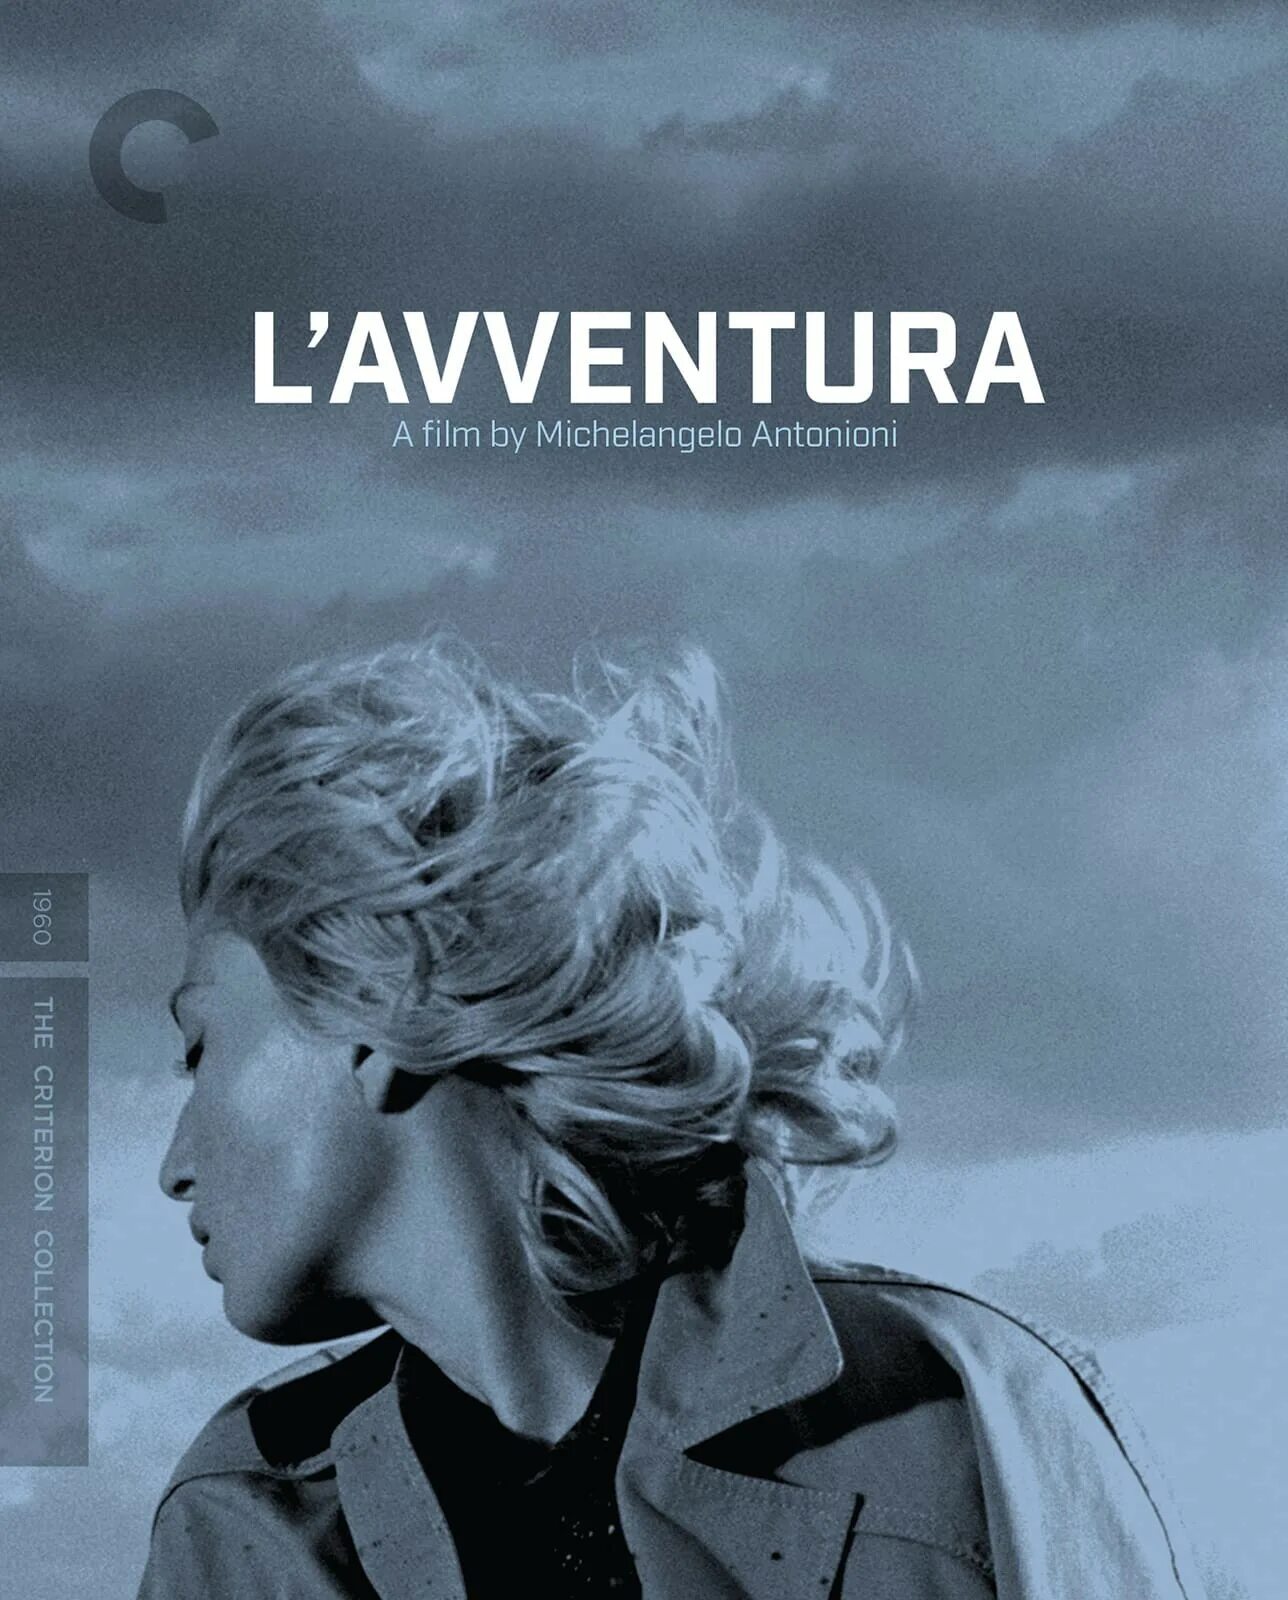 Приключение антониони. Приключение (l'avventura) 1960. Трилогия отчуждения Антониони. Приключение / l’avventura (Микеланджело Антониони — 1960).